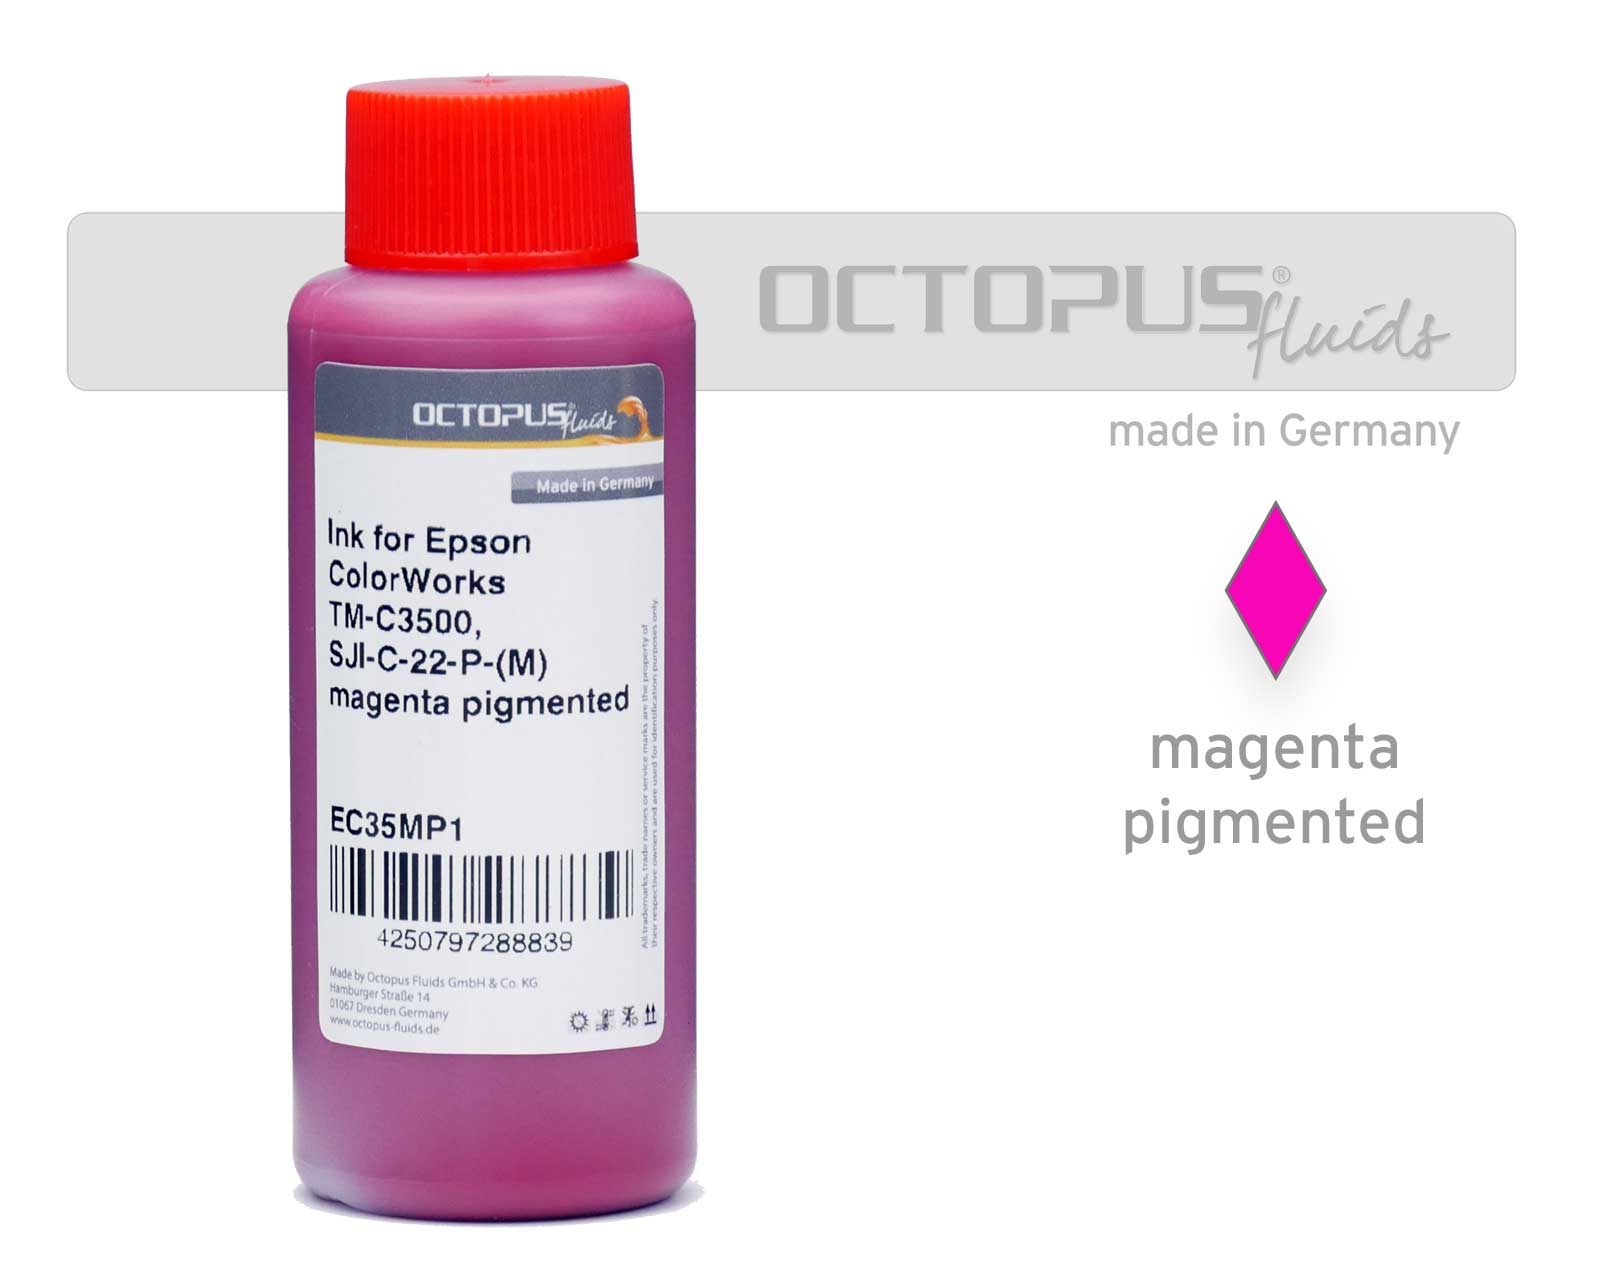 Druckertinte für Epson ColorWorks TM-C3500, SJI-C-22-P-(M) magenta